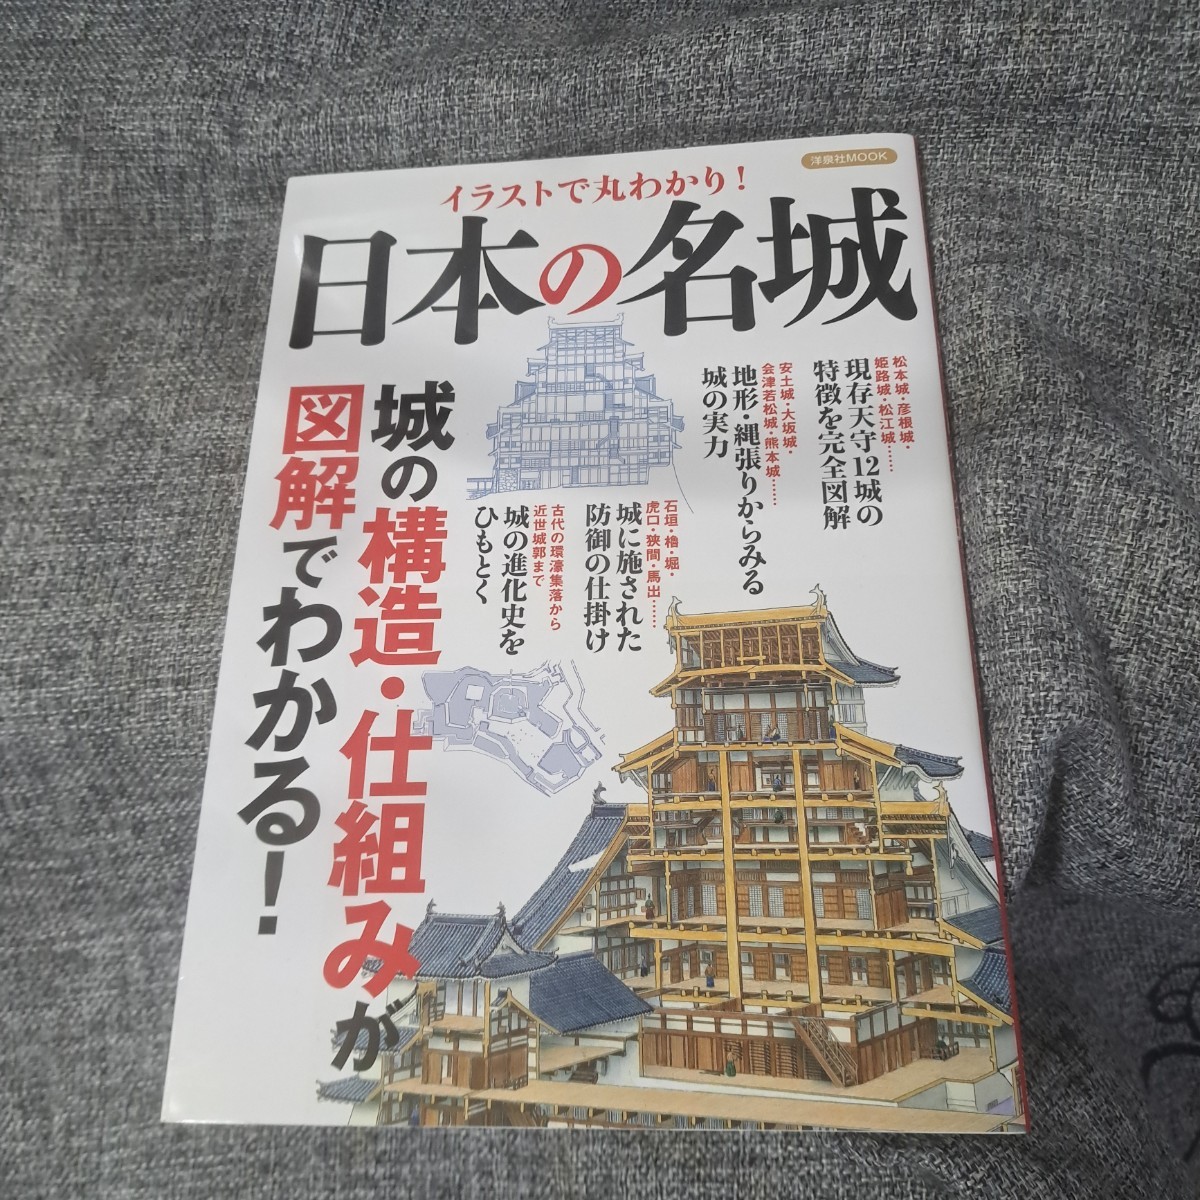 イラストで丸わかり!日本の名城 城の構造・仕組みが図解でわかる!_画像1